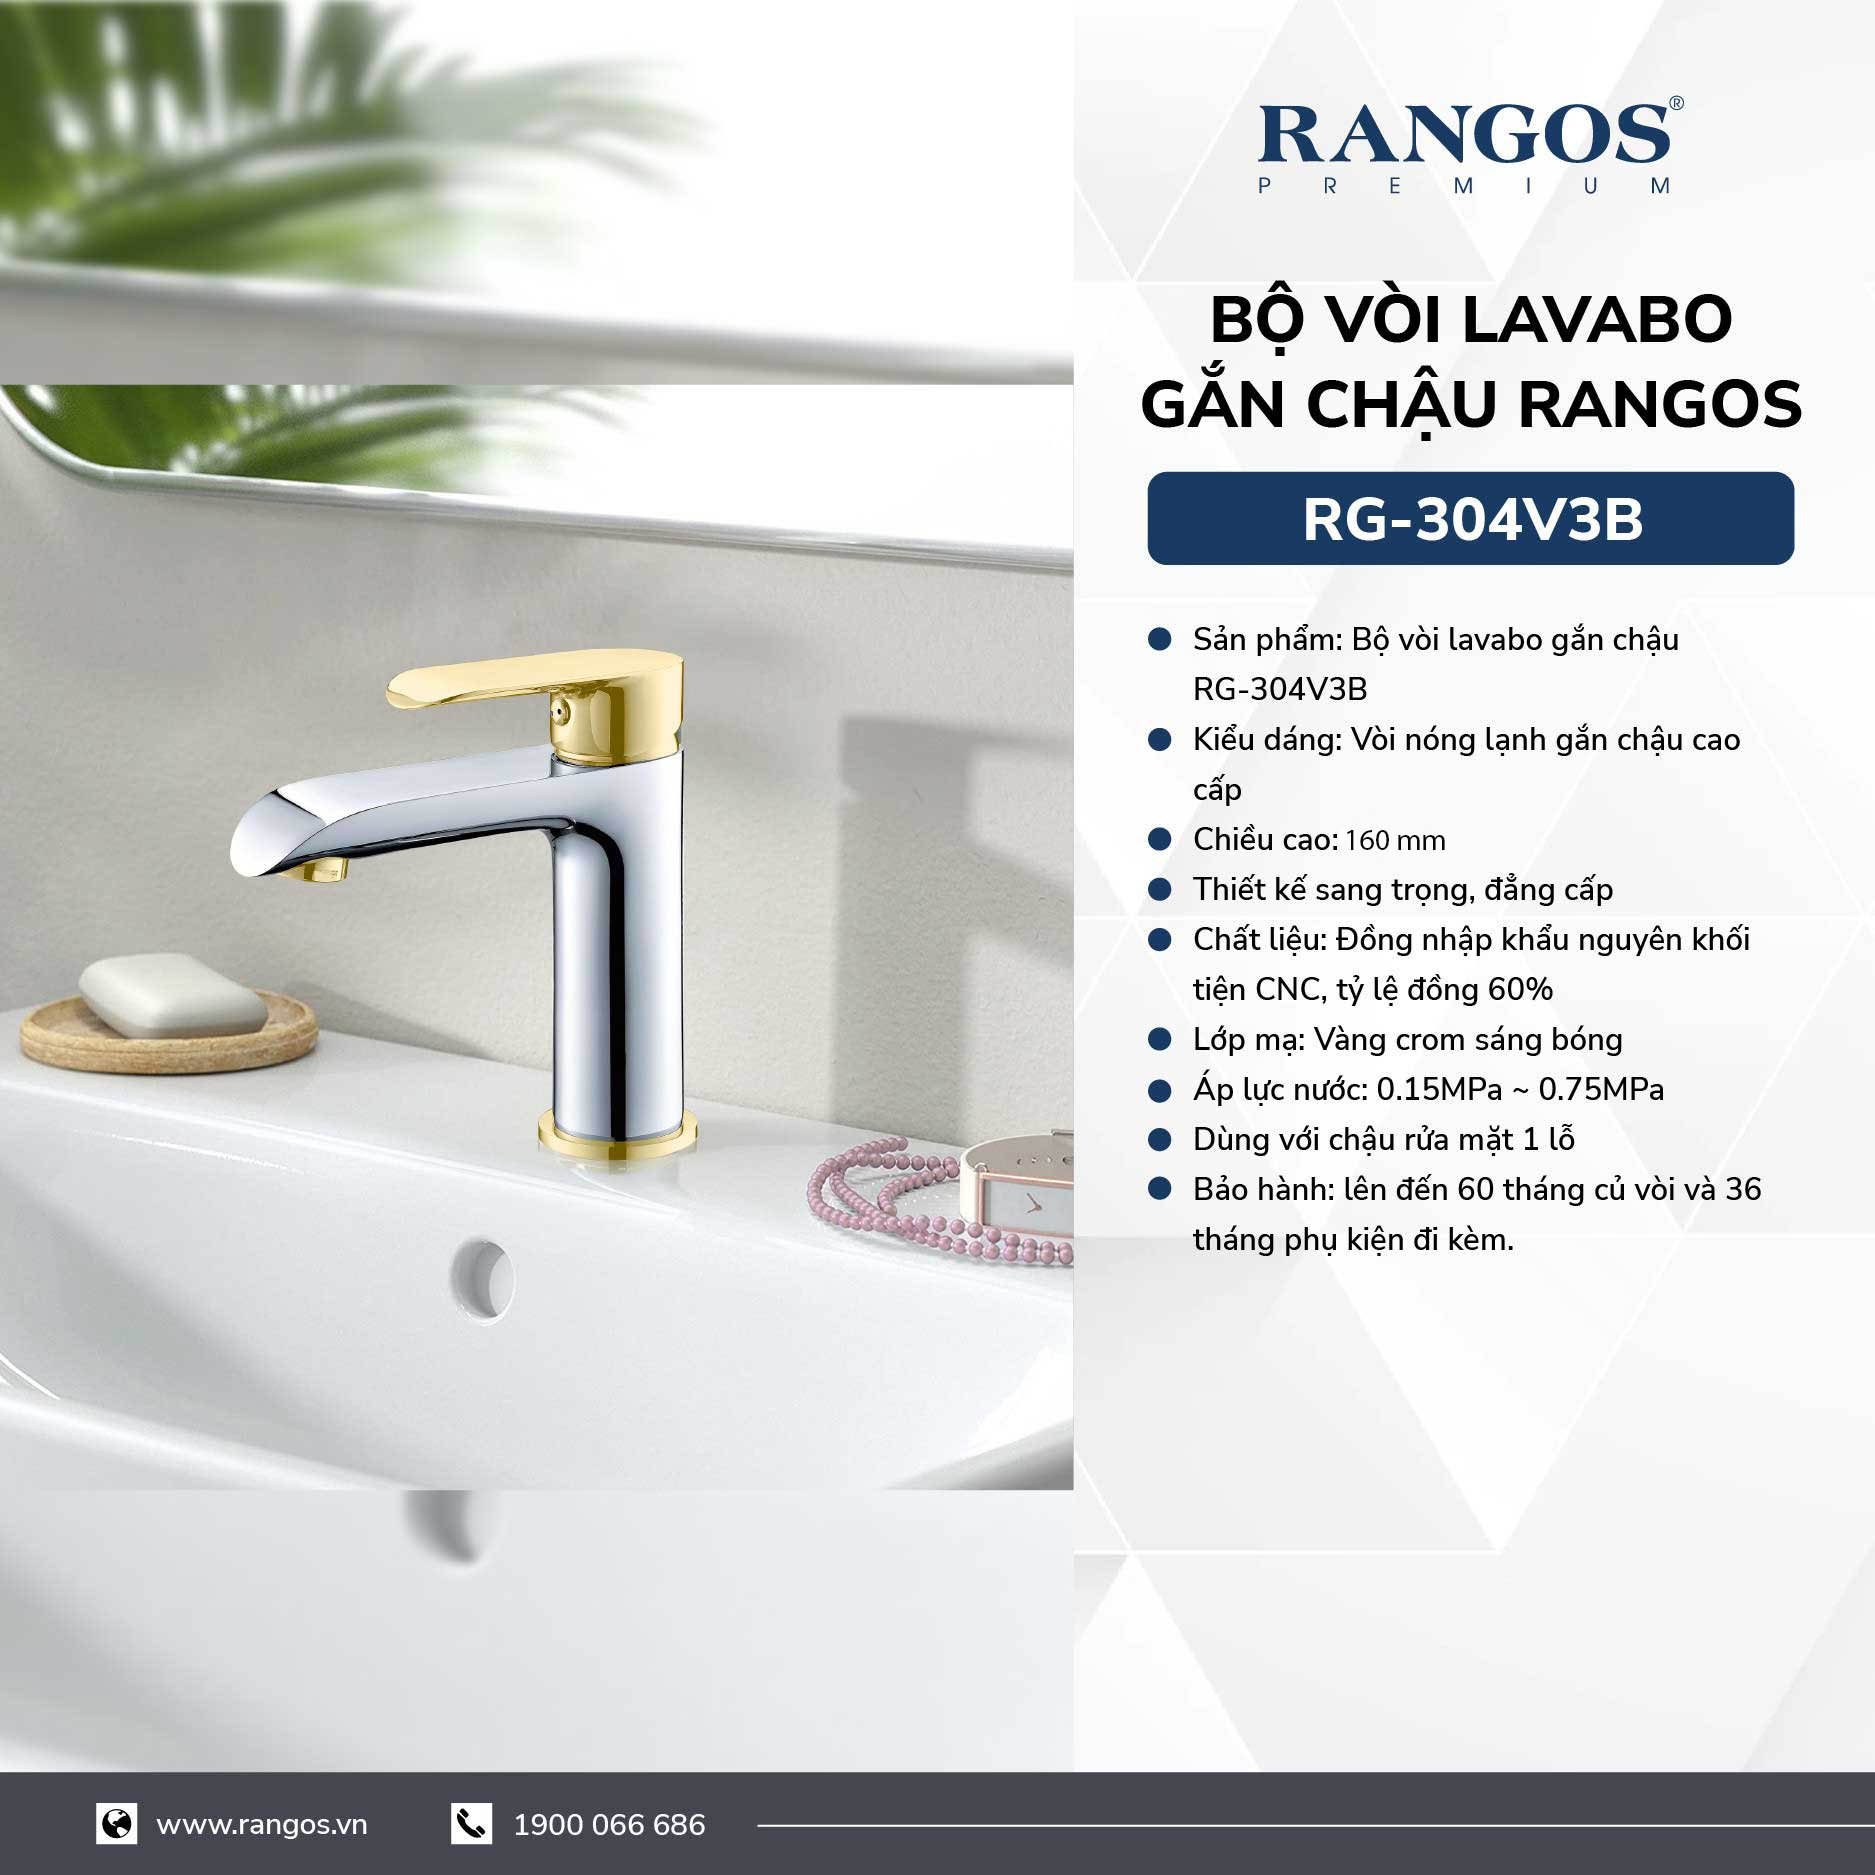 Bộ vòi lavabo gắn chậu Rangos RG-304V3B